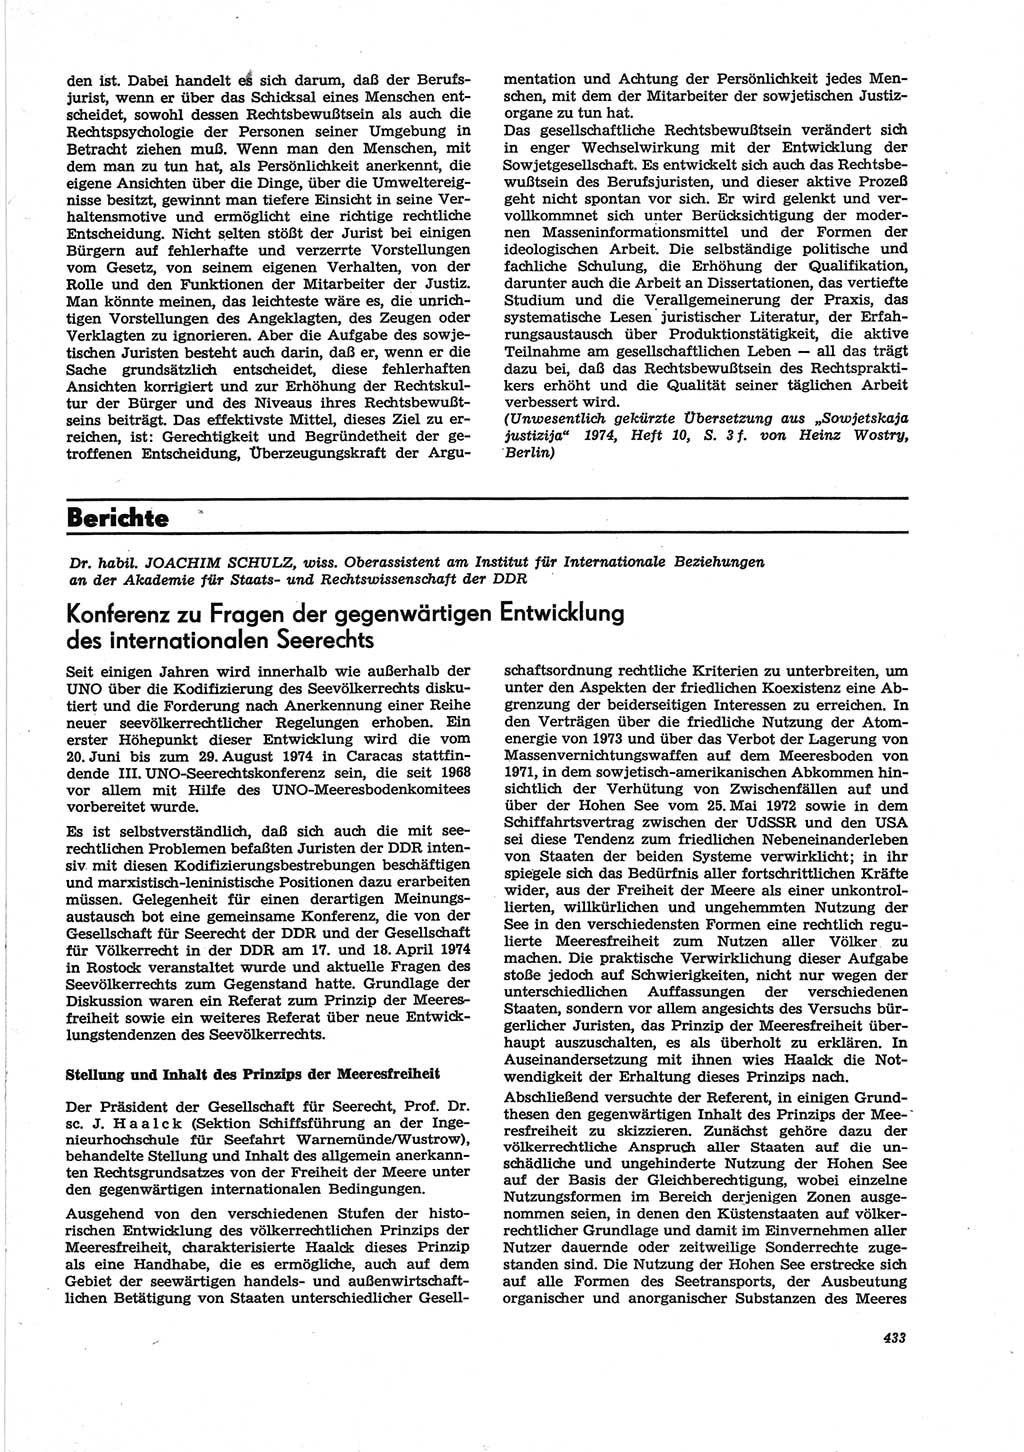 Neue Justiz (NJ), Zeitschrift für Recht und Rechtswissenschaft [Deutsche Demokratische Republik (DDR)], 28. Jahrgang 1974, Seite 433 (NJ DDR 1974, S. 433)